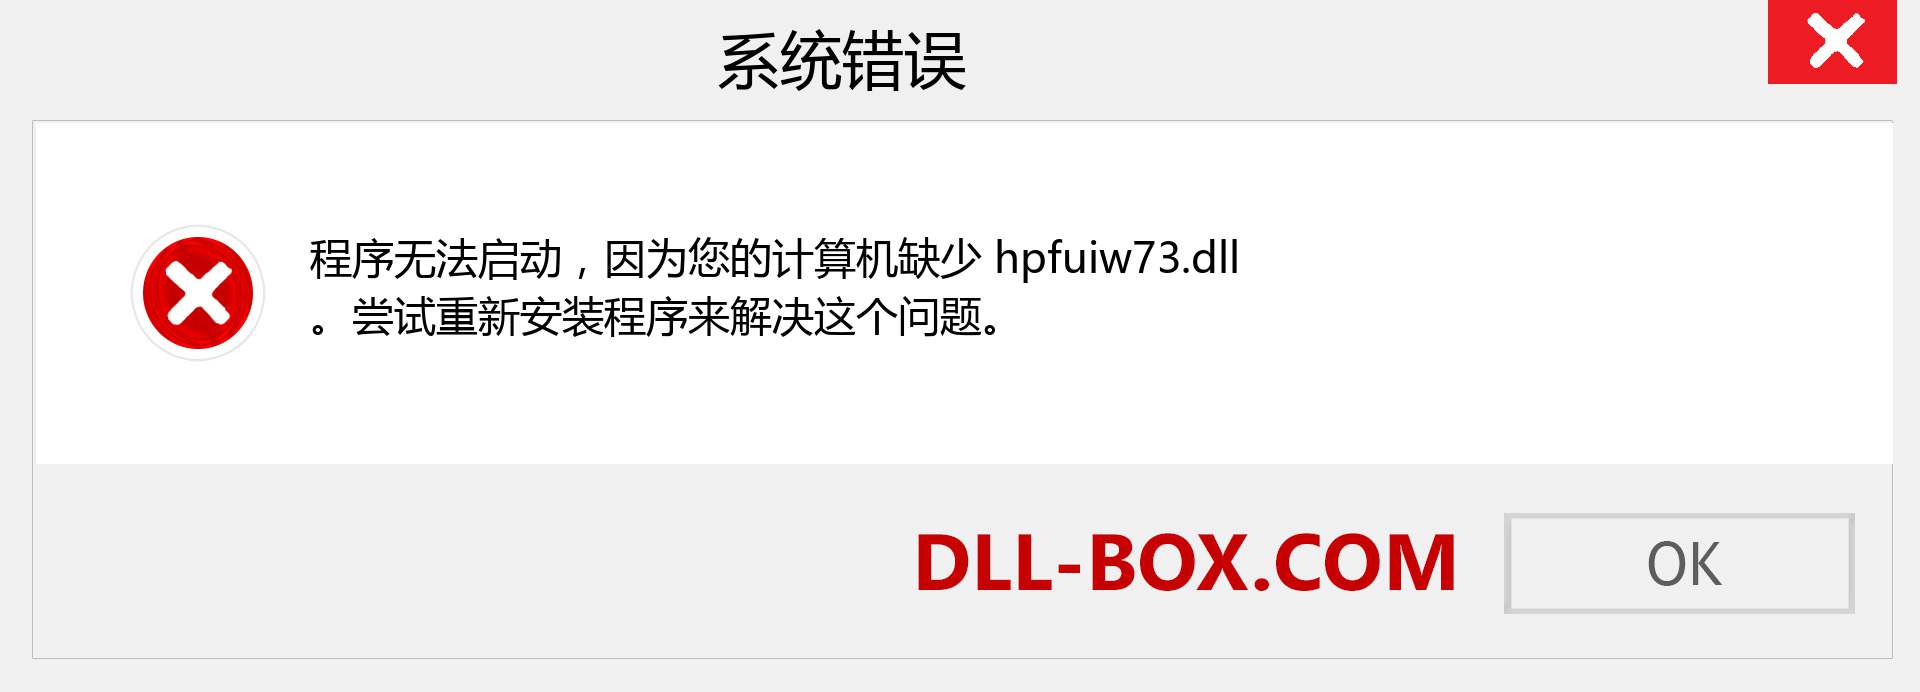 hpfuiw73.dll 文件丢失？。 适用于 Windows 7、8、10 的下载 - 修复 Windows、照片、图像上的 hpfuiw73 dll 丢失错误